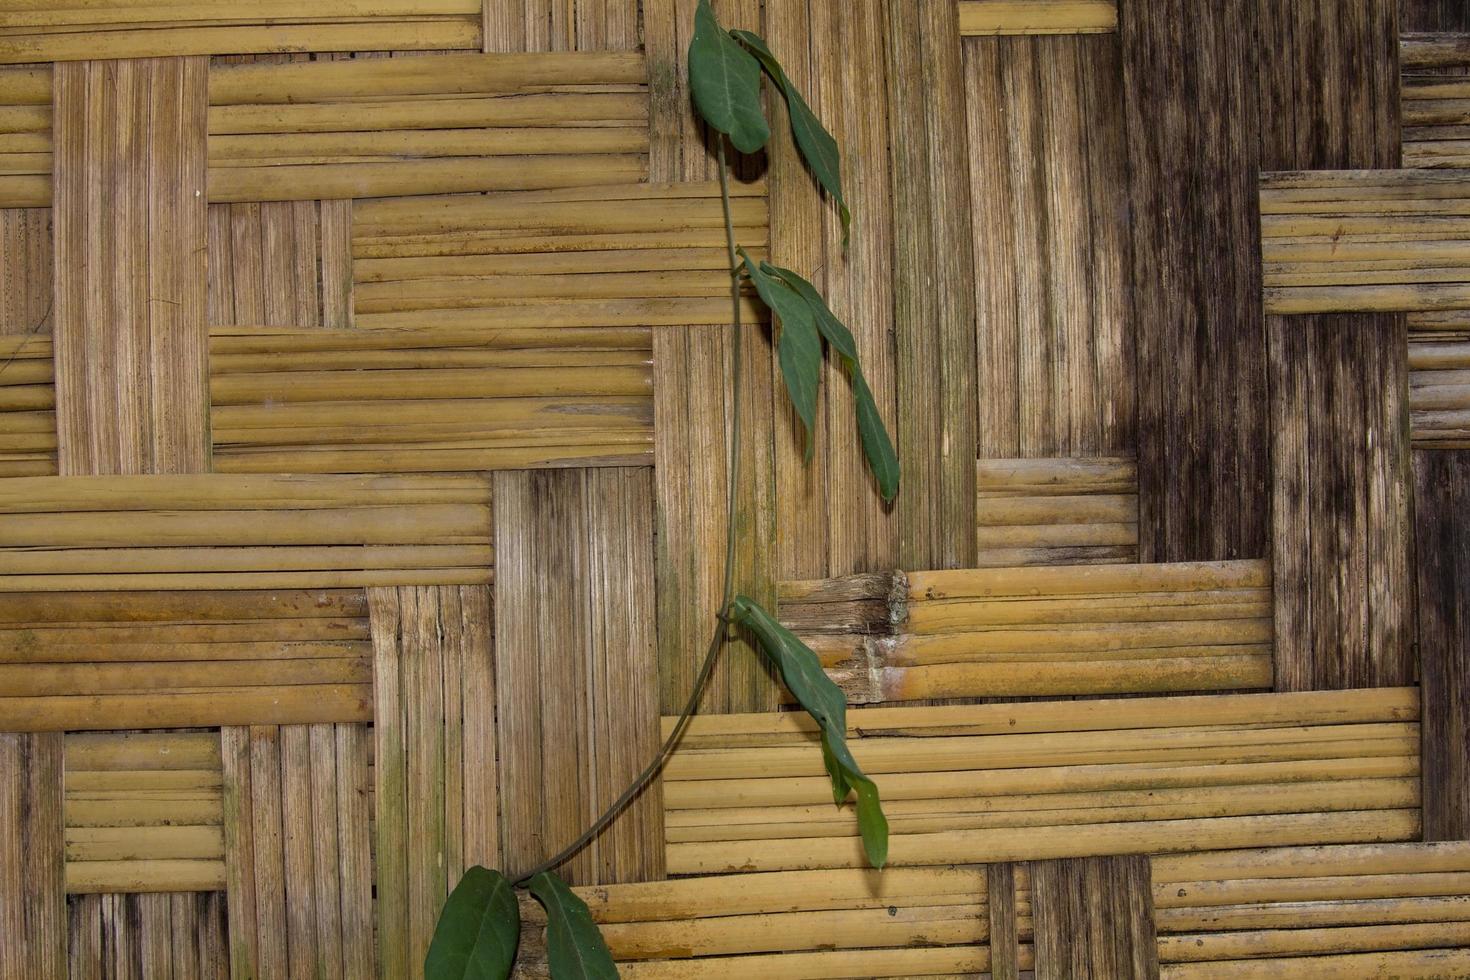 las paredes de las casas, ingeniosamente tejidas con bambú seco, son una forma de vida tradicional en las zonas rurales de asia: tailandia, laos y kampucha. foto